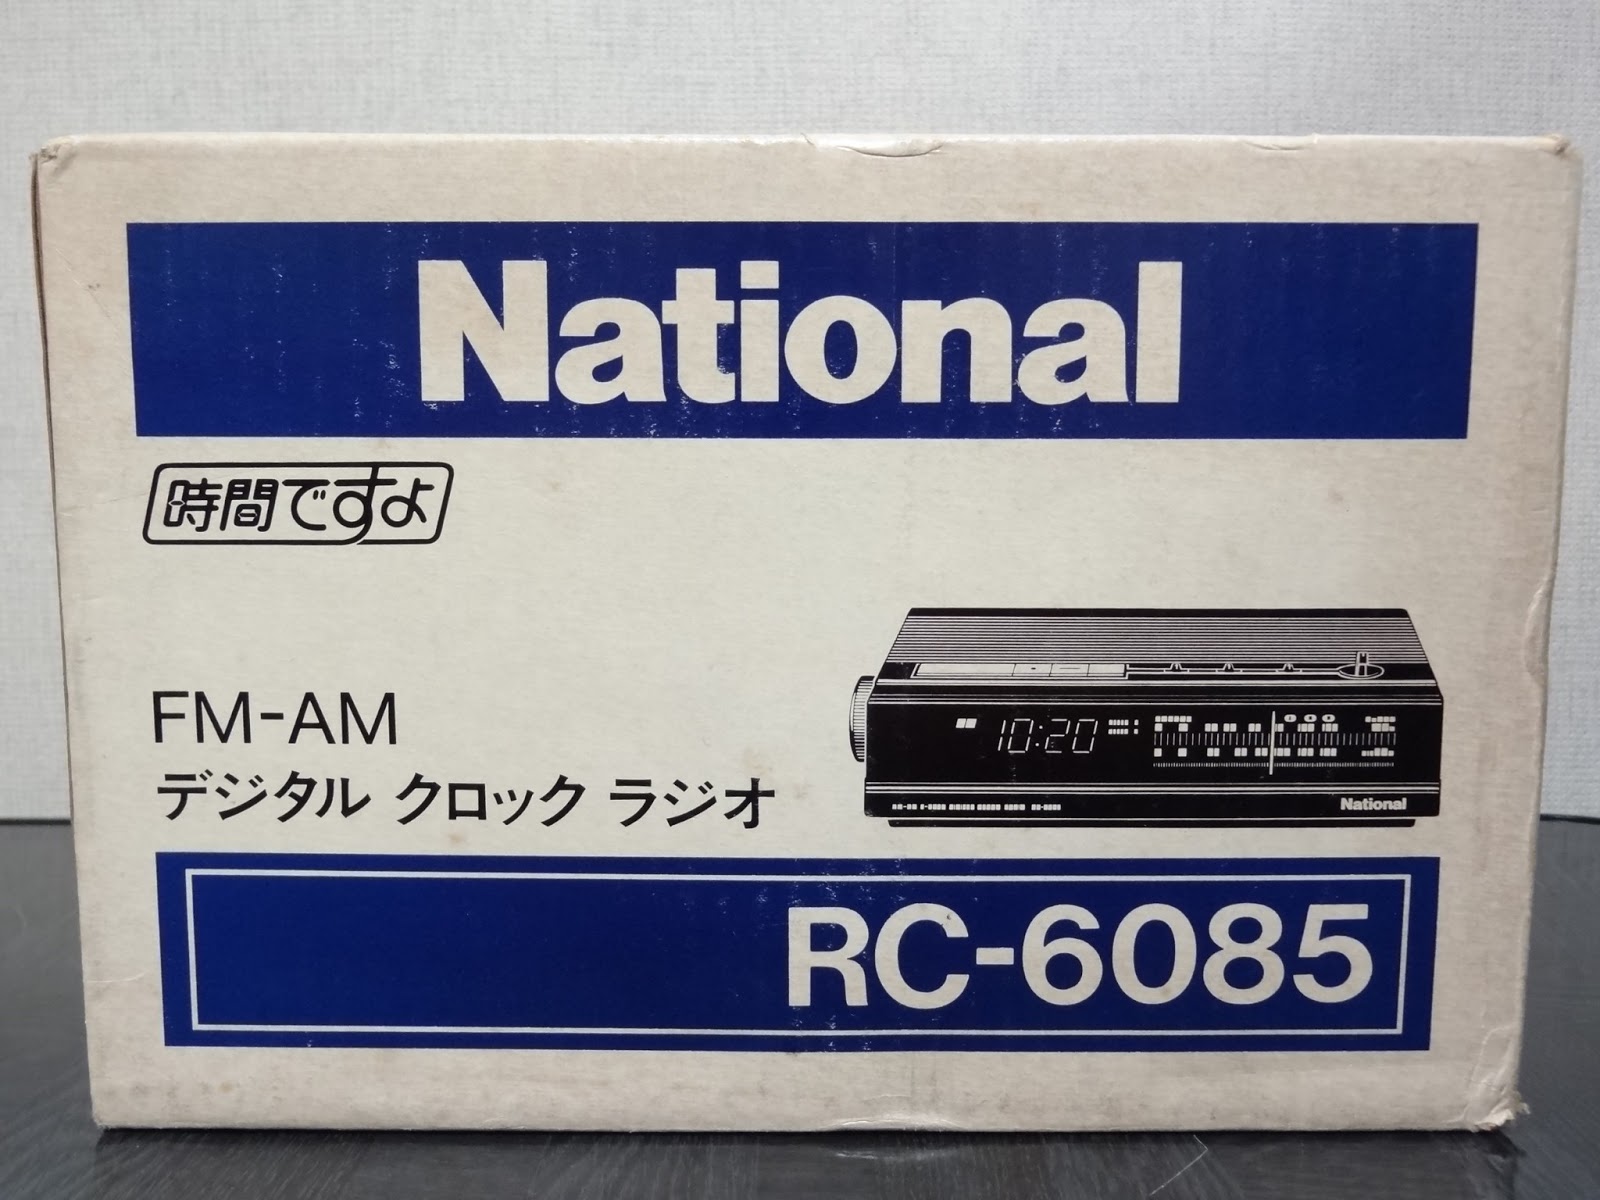 狂乱Nonaha日記: 最後の角型モデル？National クロックラジオ RC-6085